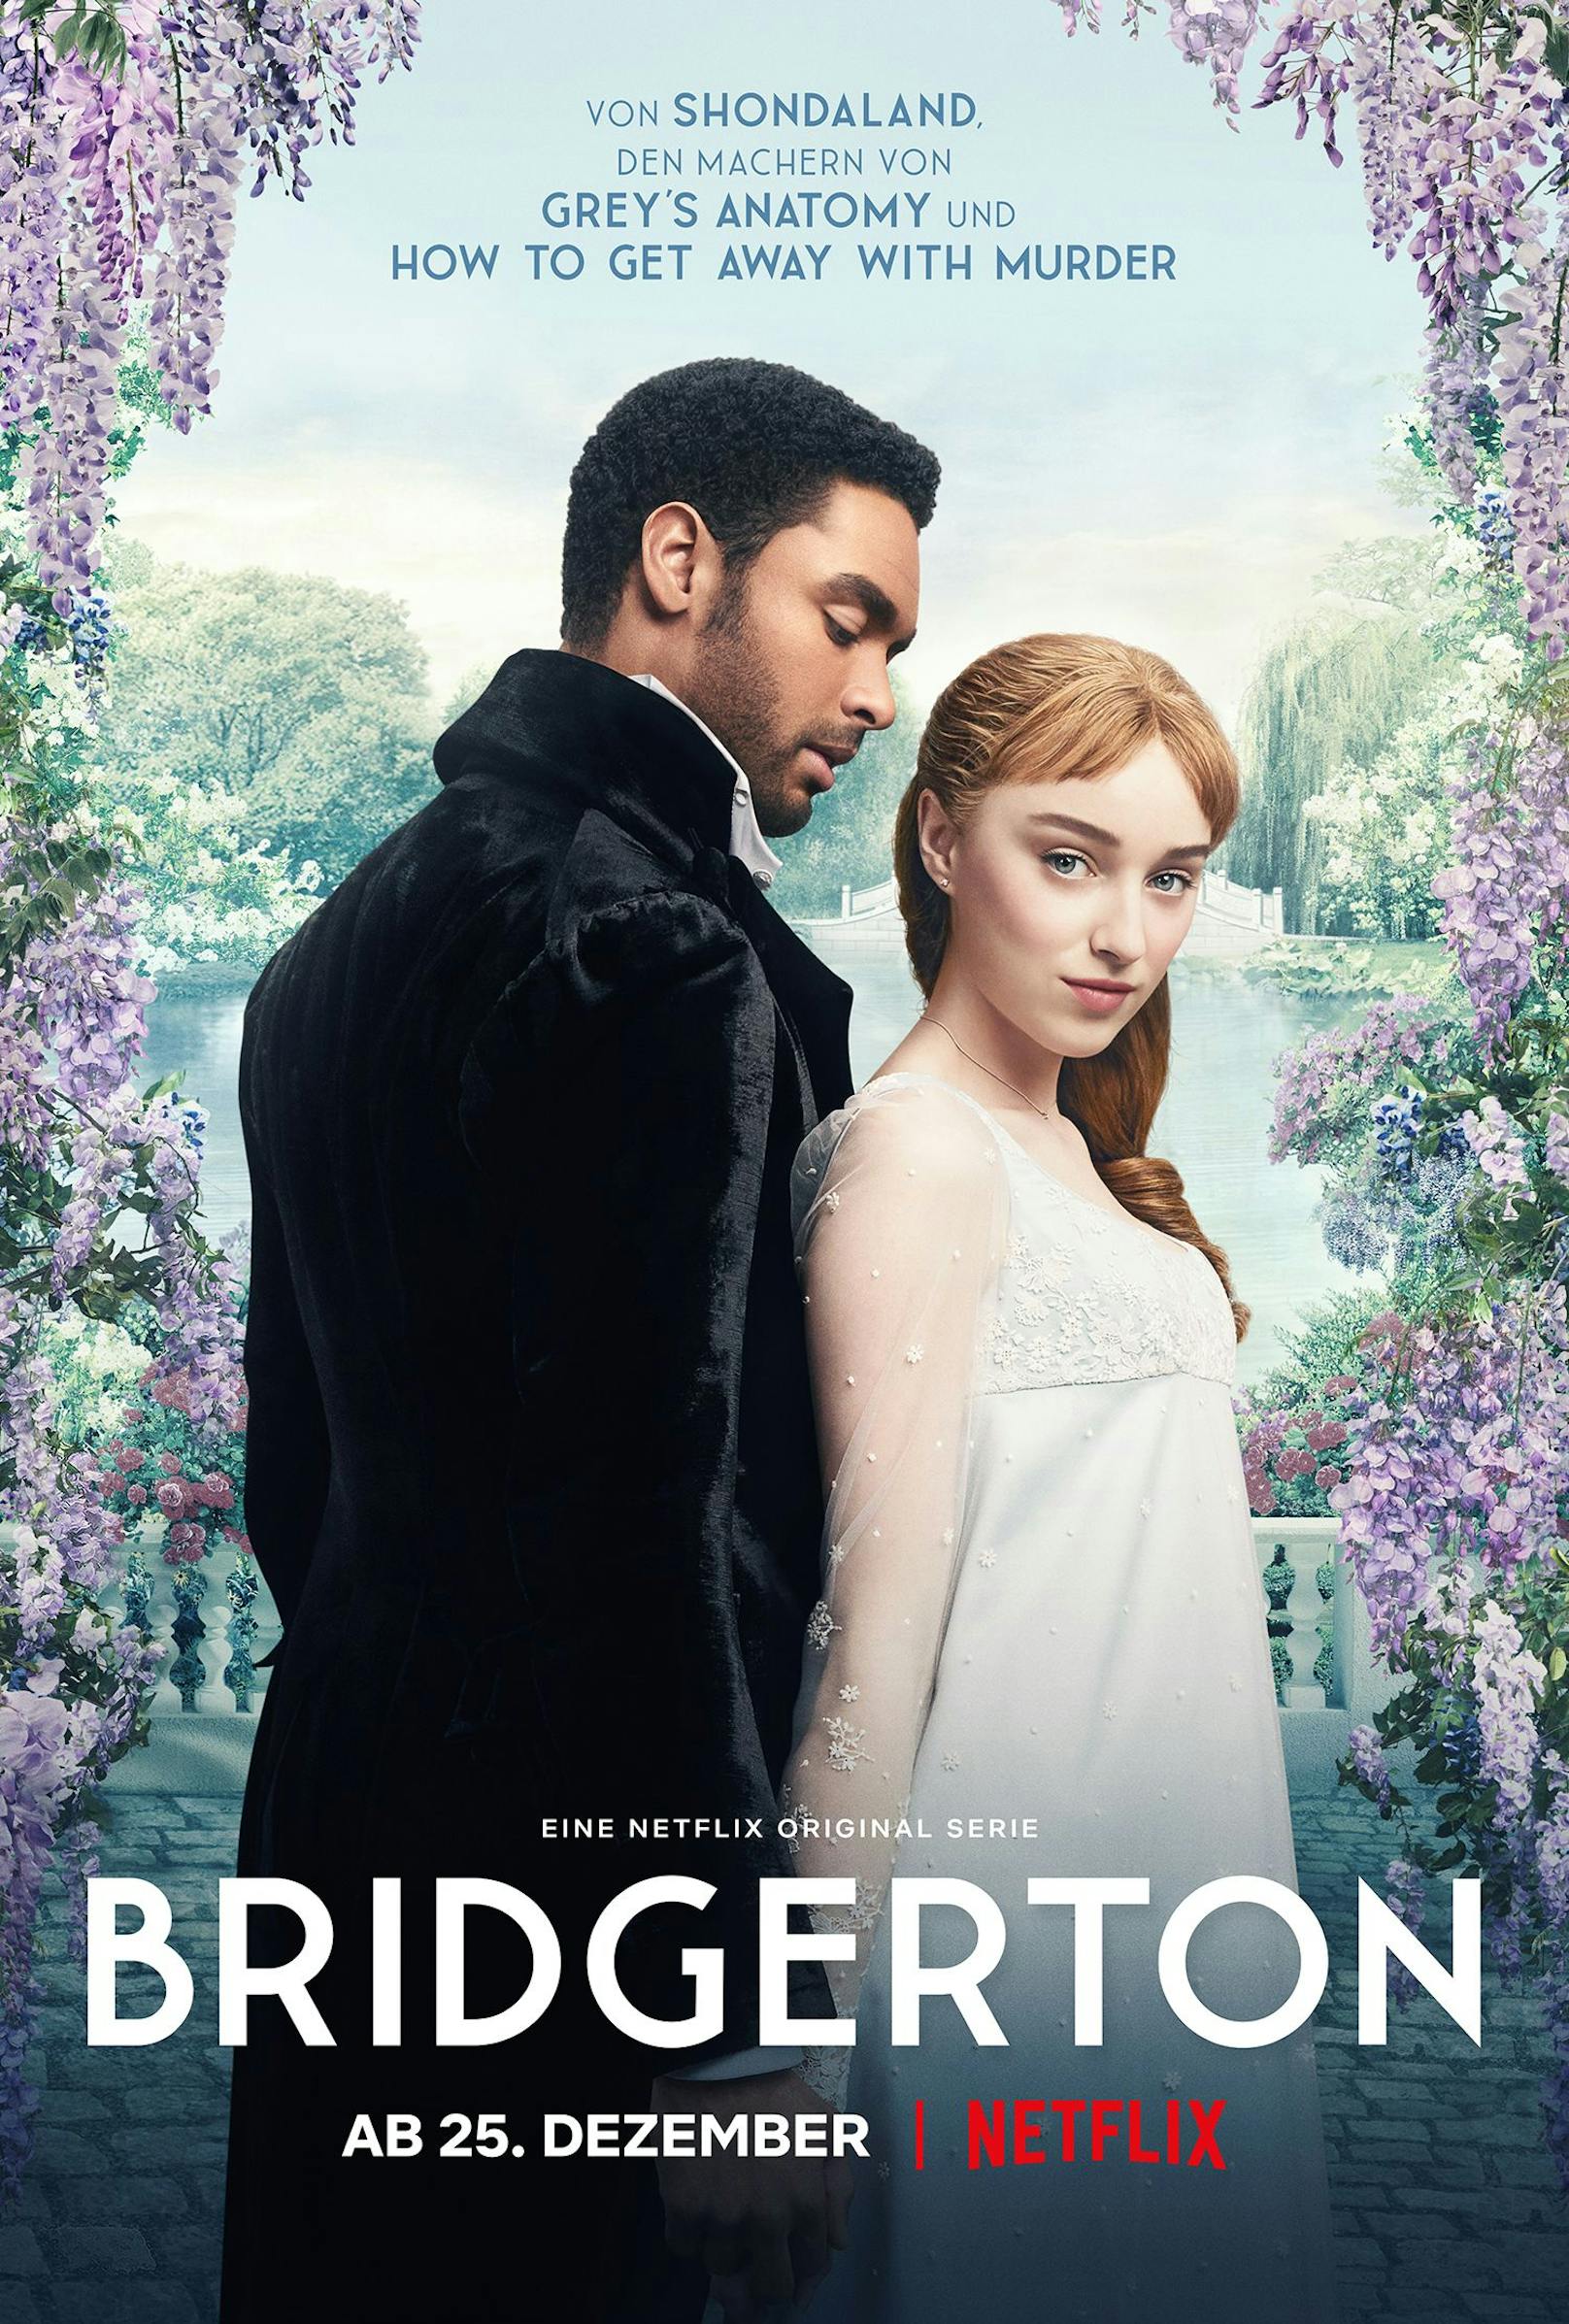 Die erste Staffel <em>"Bridgerton"</em> ist auf Netflix verfügbar.